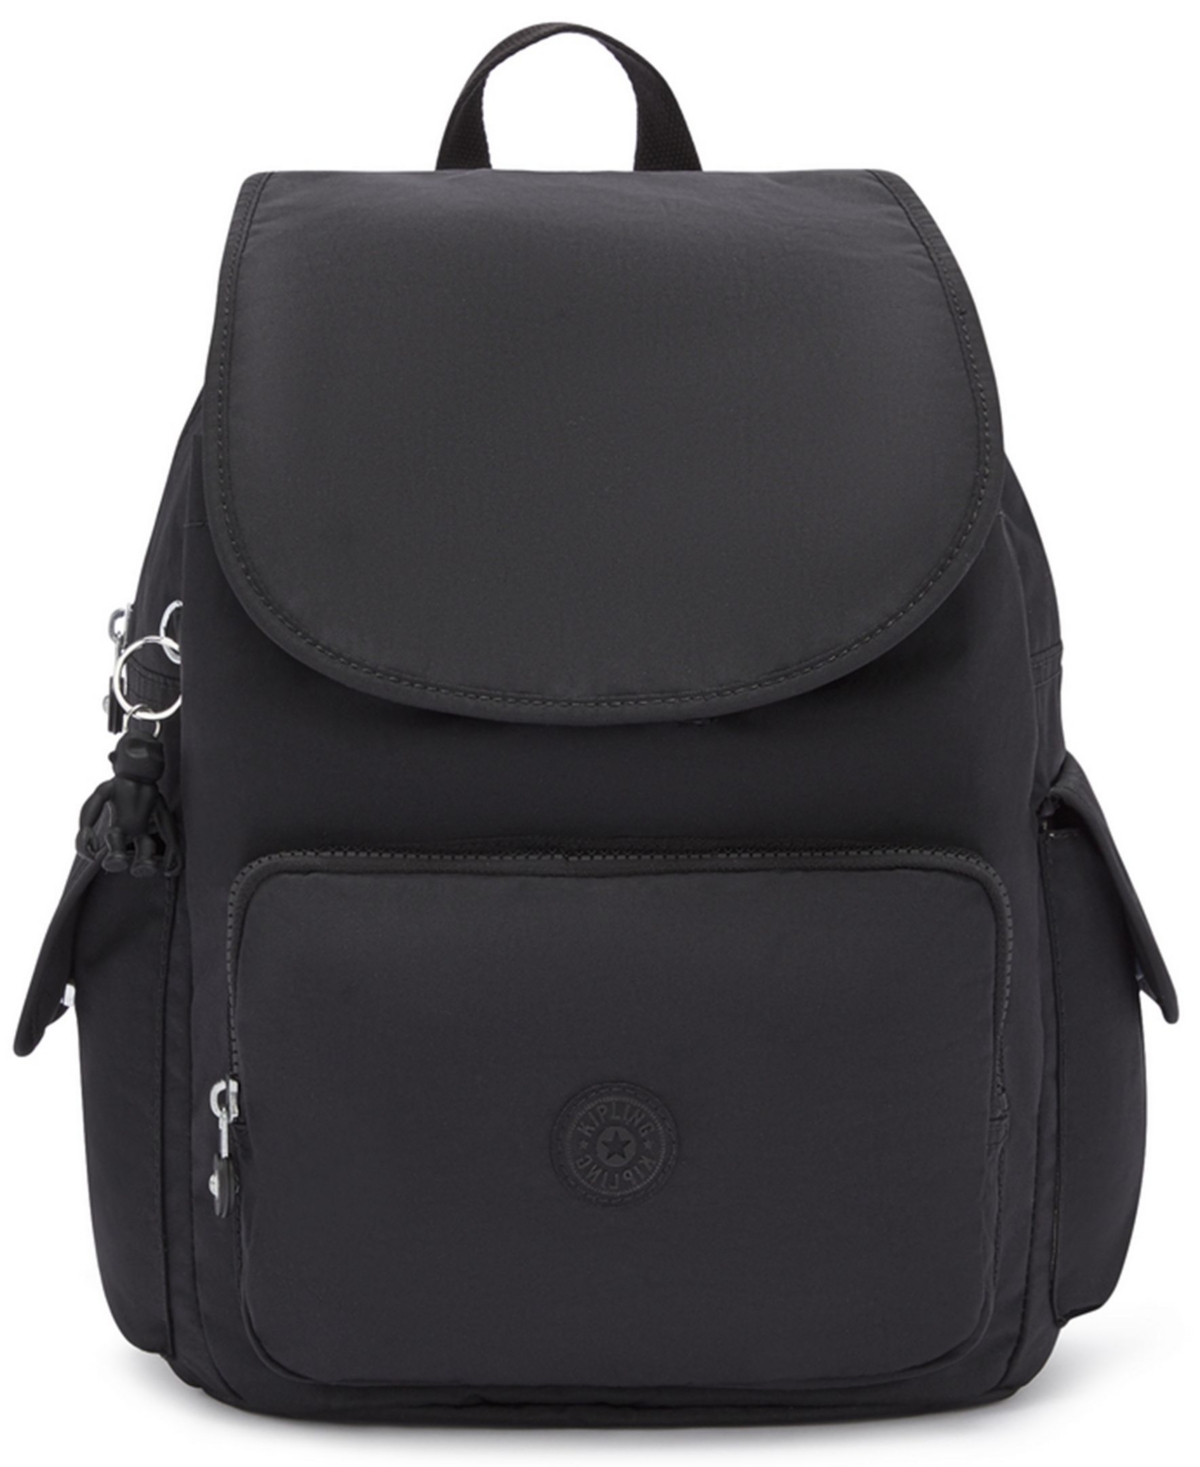 Kipling New City Flap Nylon Backpack In Black Noir